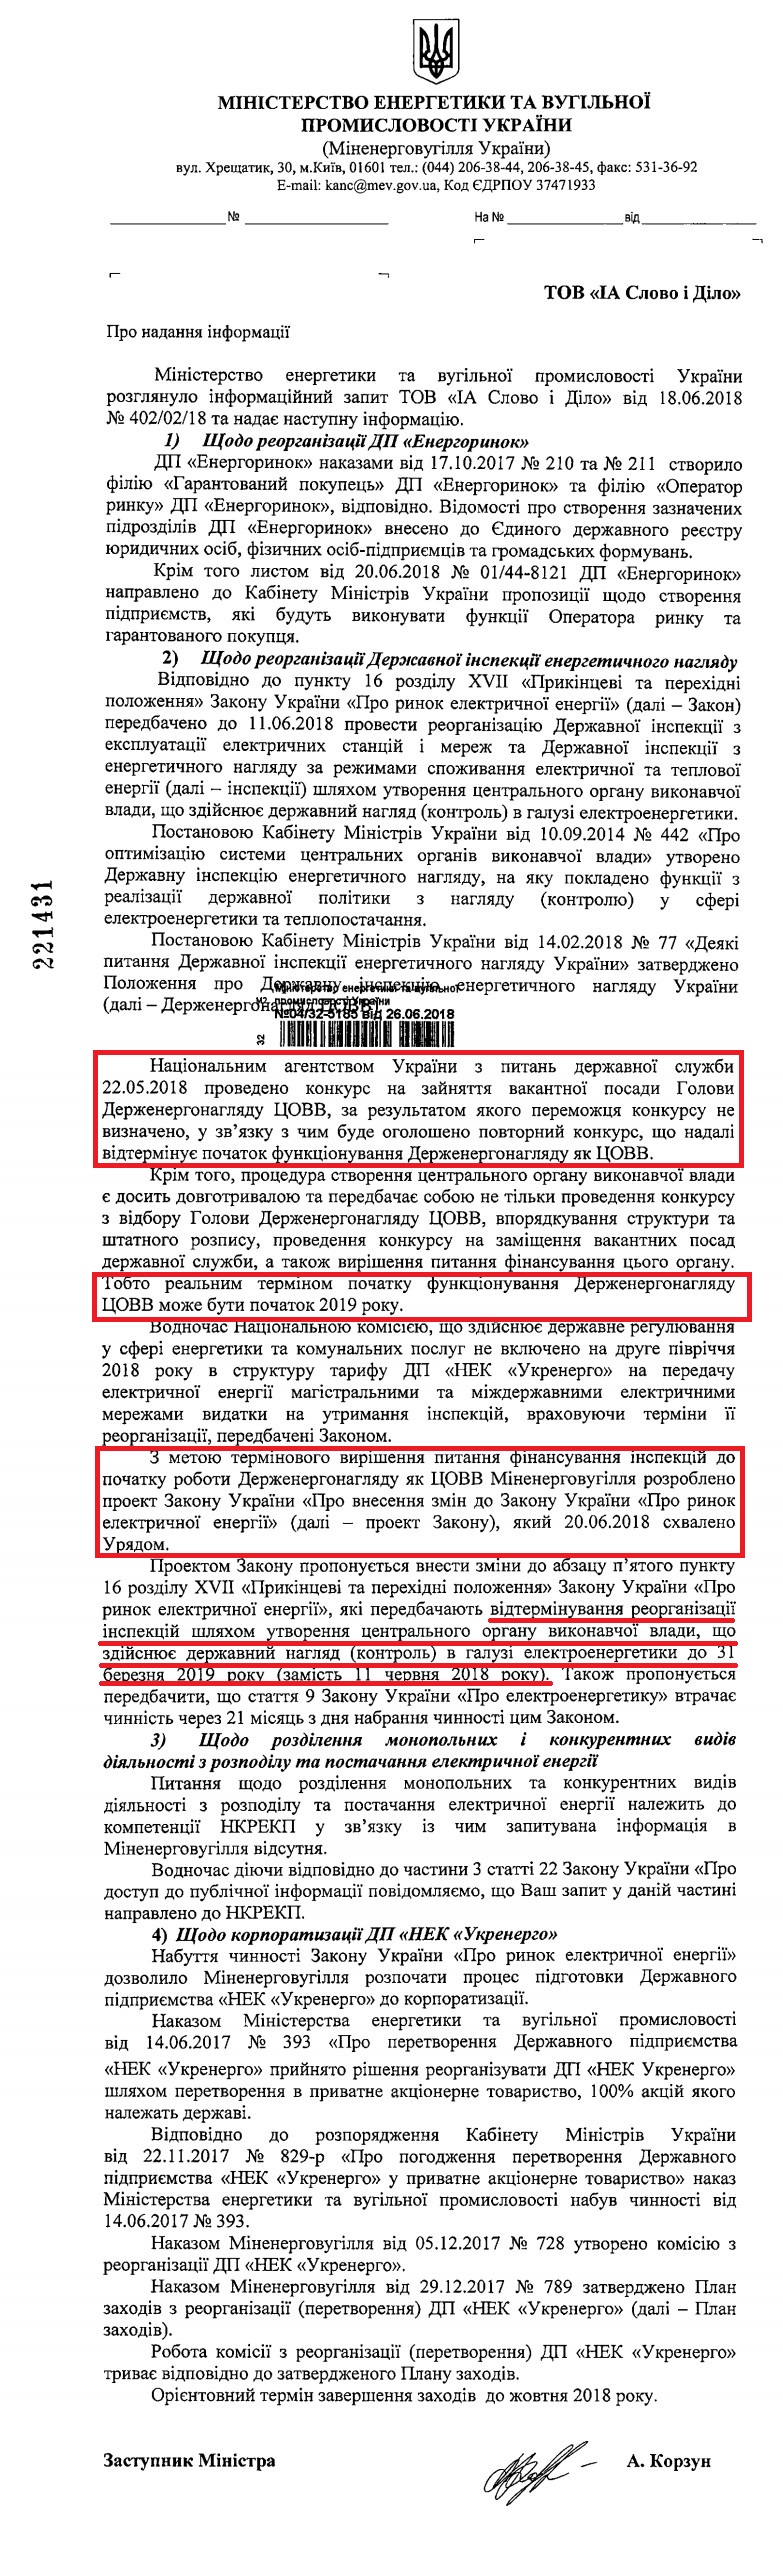 Лист Міністерства енергетики та вугільної промисловості України від 26 червня 2018 року